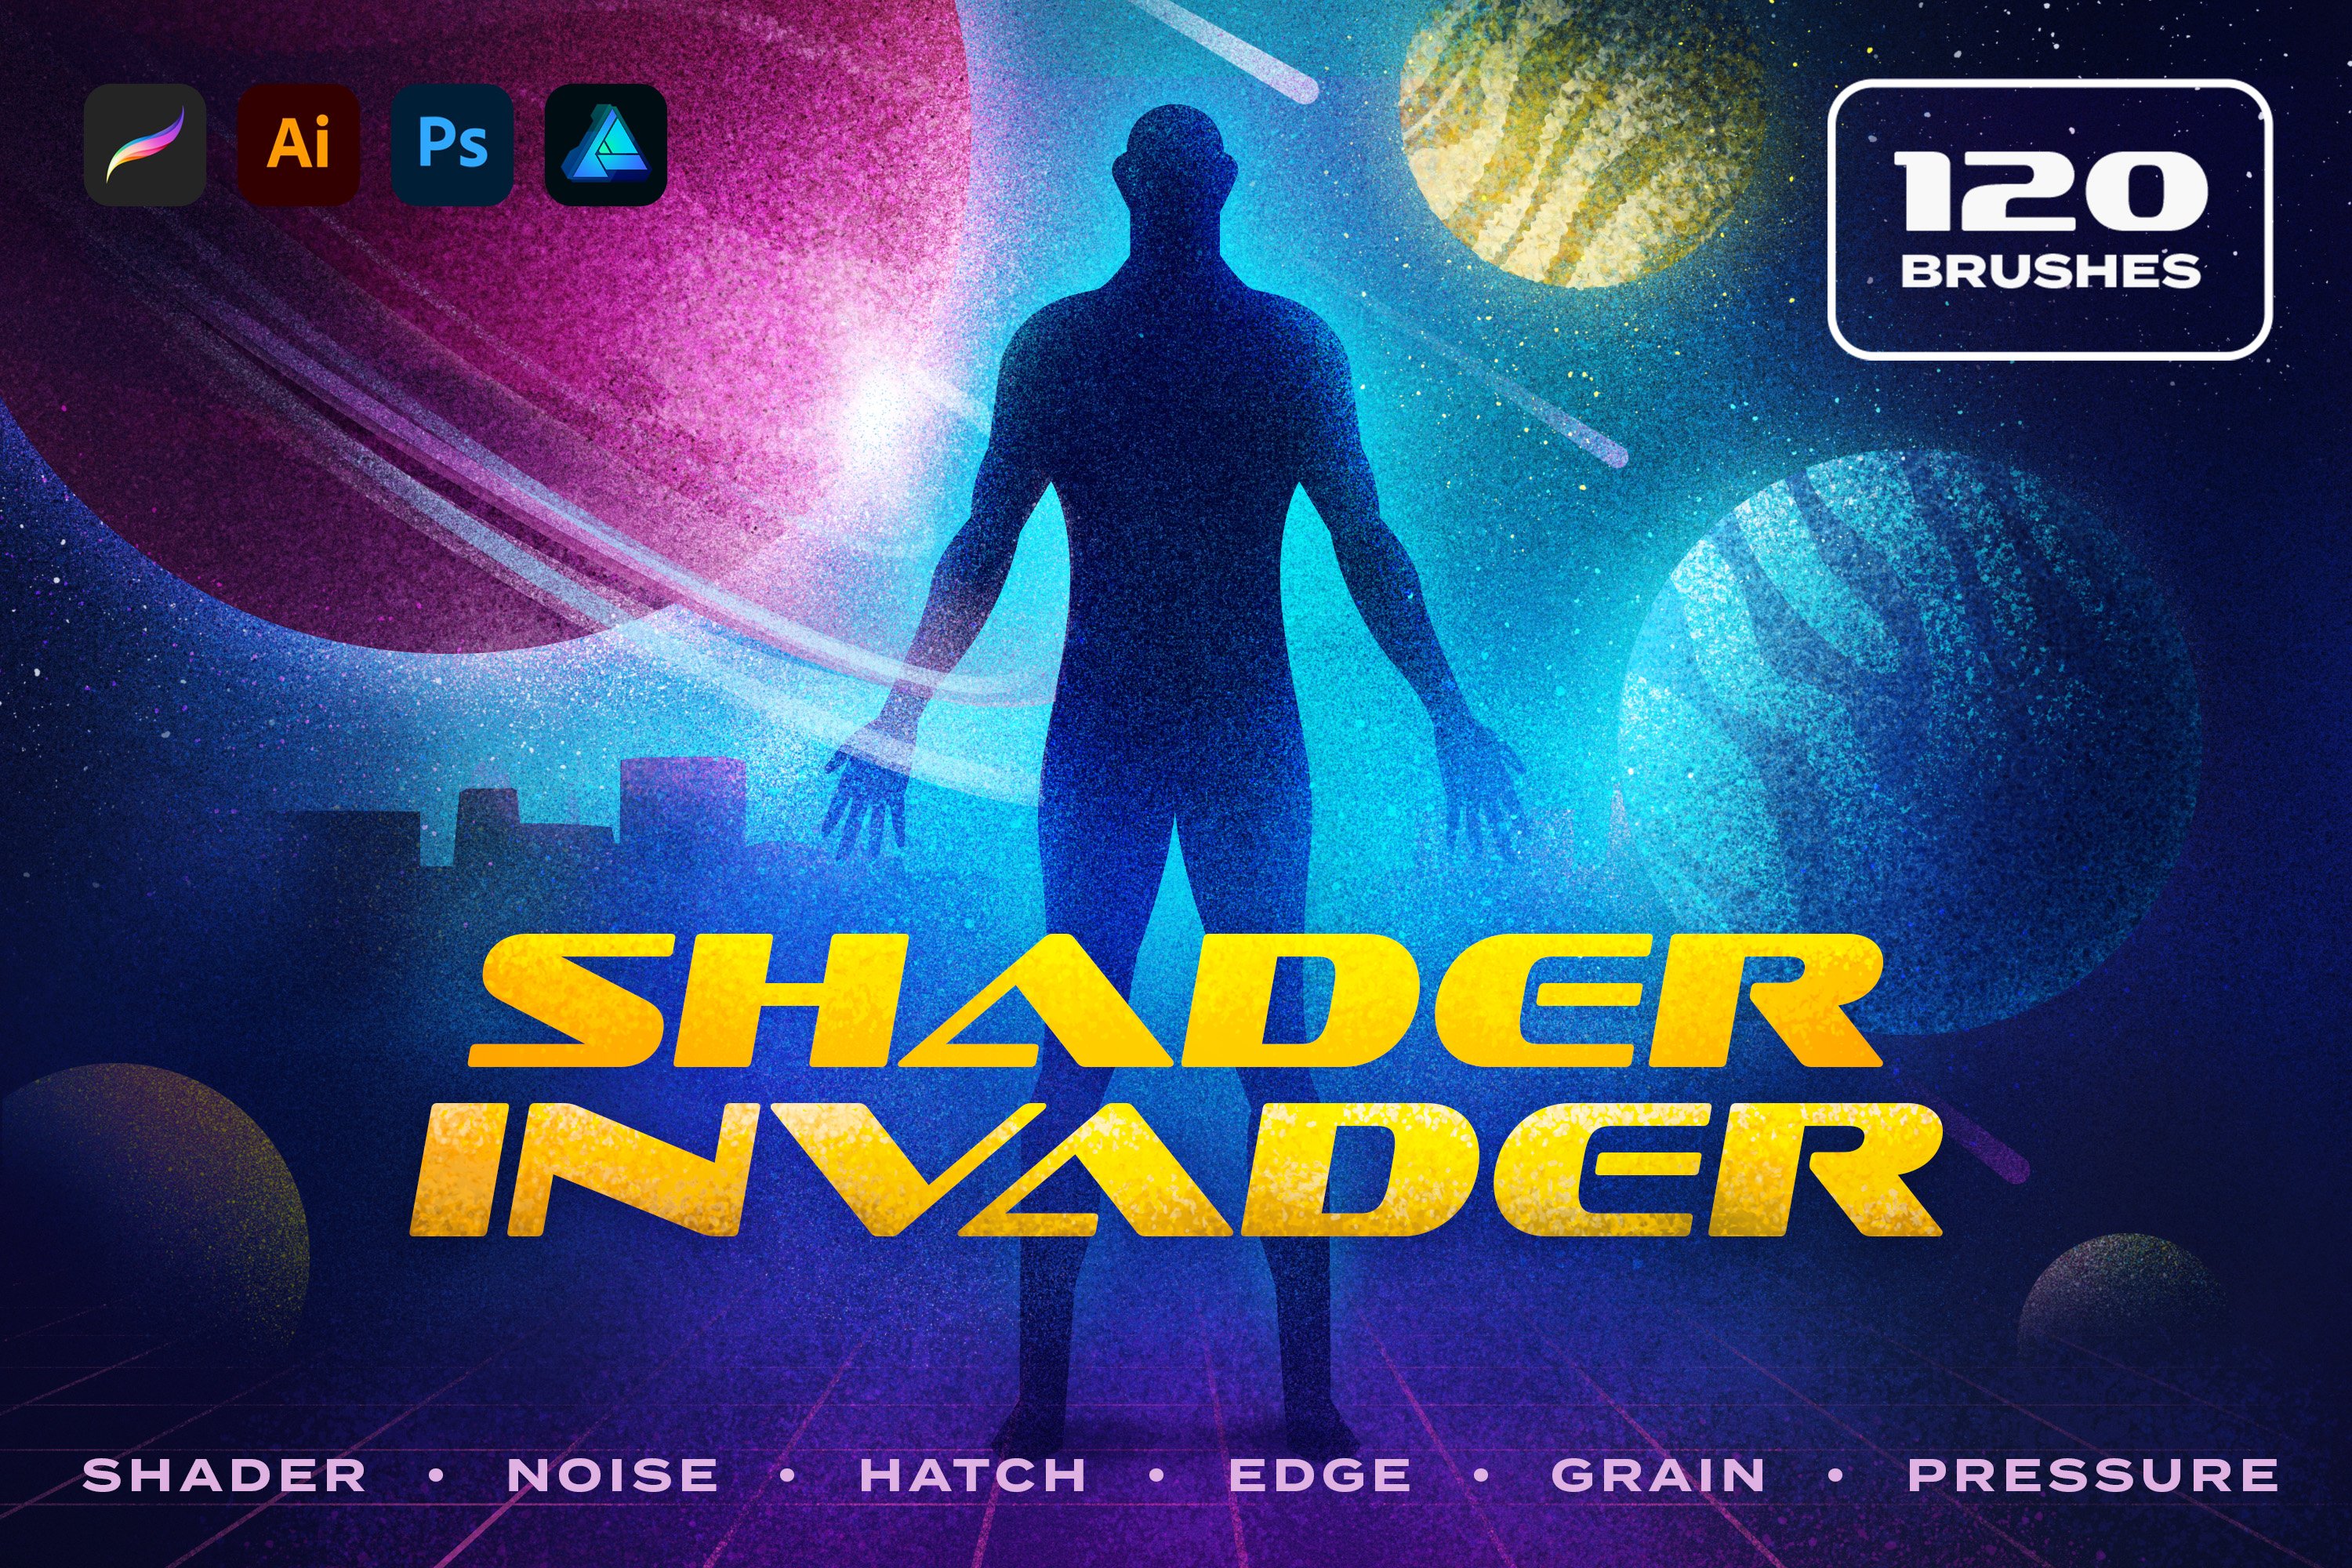 Shader Invader Brushes